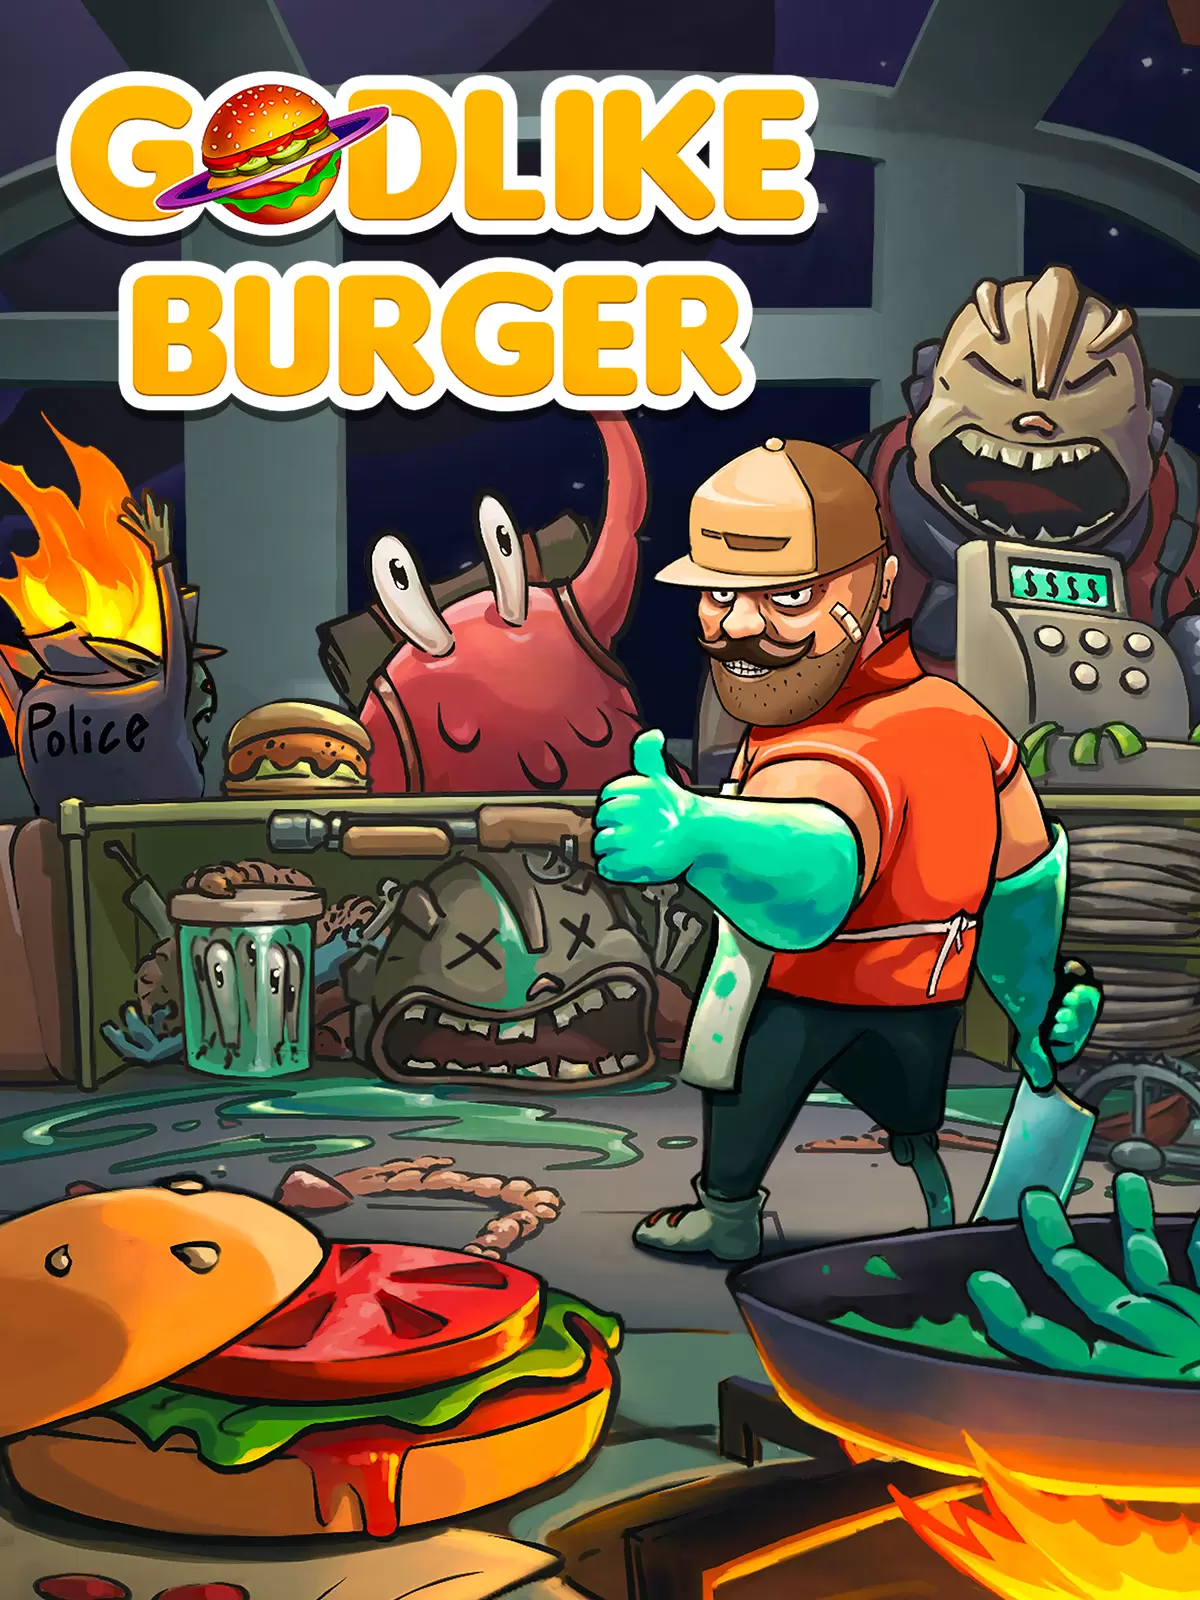 دانلود بازی Godlike Burger v1.0.7 برای کامپیوتر – نسخه GOG